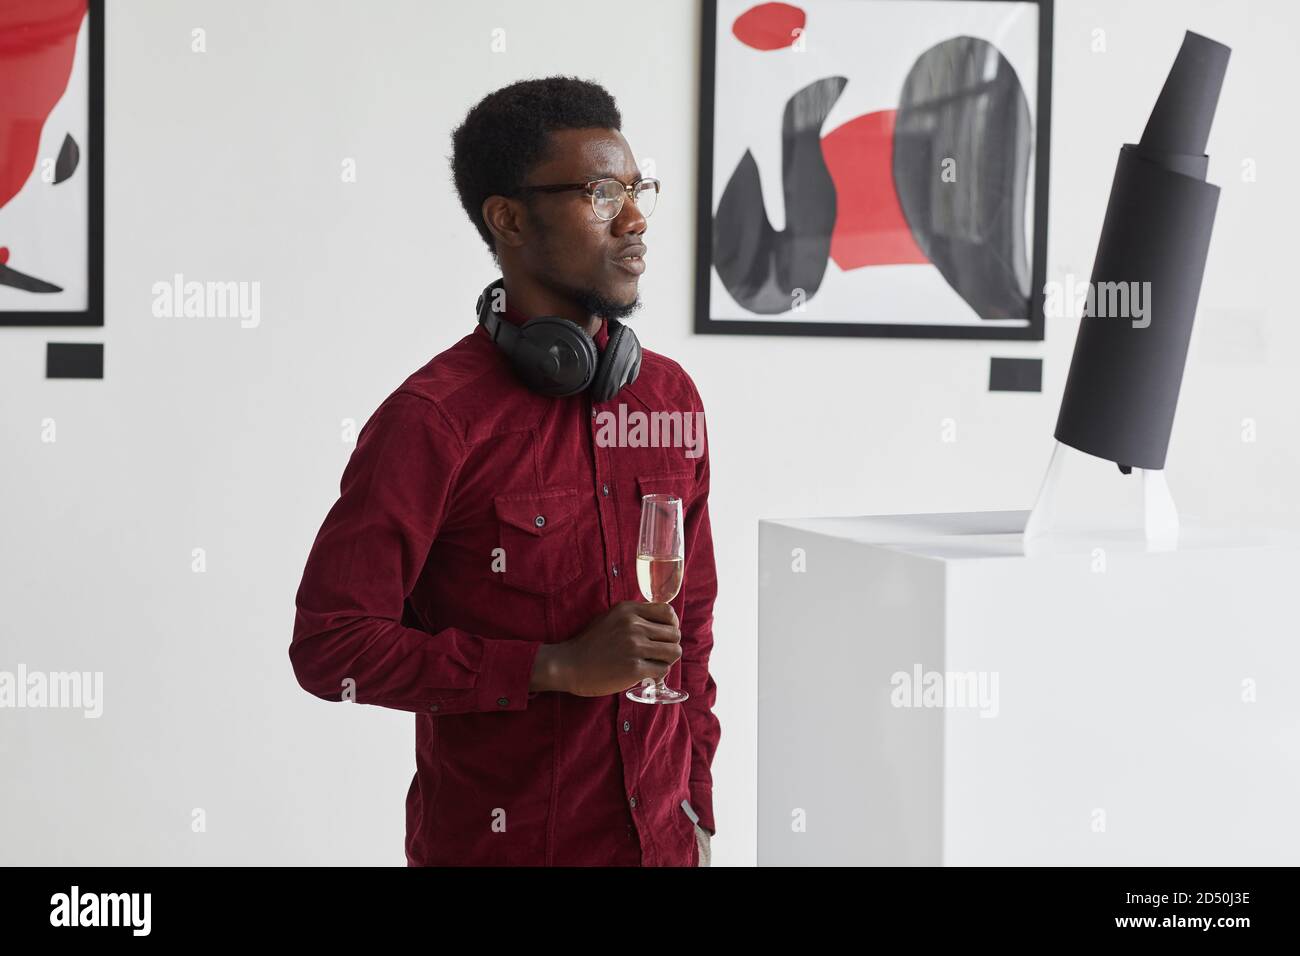 Waist up Porträt des modernen afroamerikanischen Mann hält Champagner Glas während der Erkundung der modernen Kunstgalerie Ausstellung, Copy Space Stockfoto